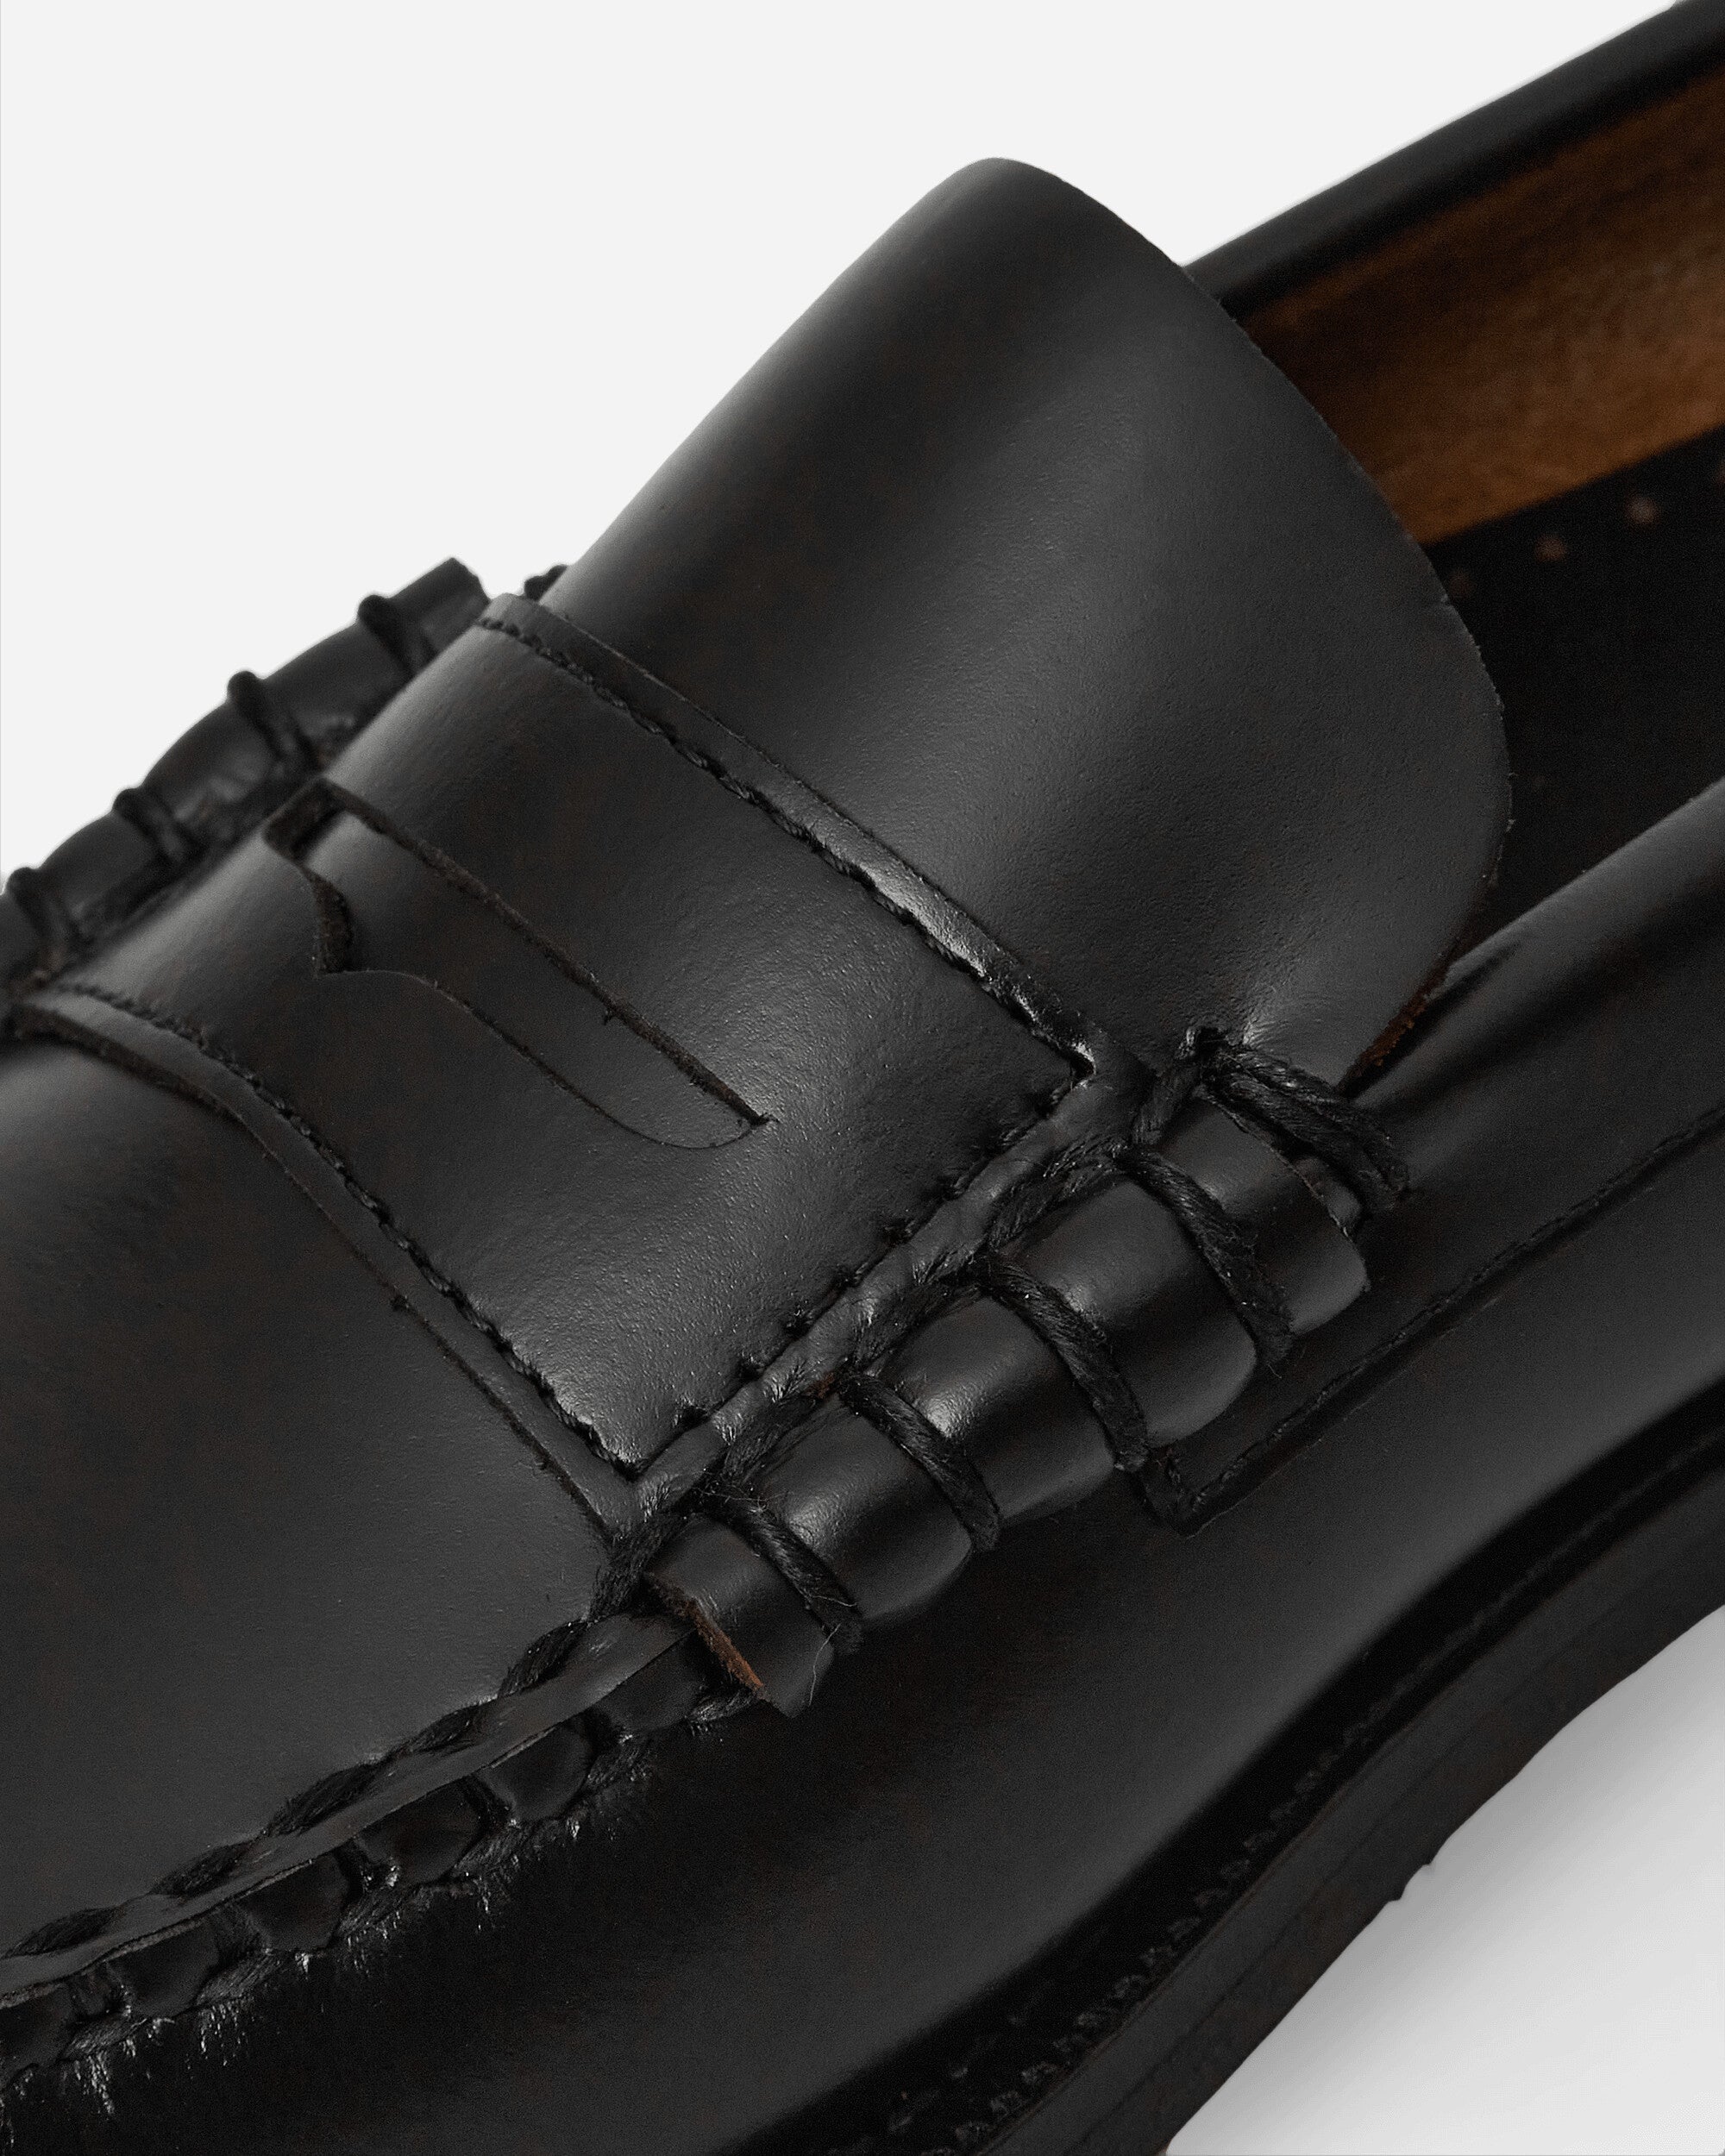 Sebago Classic Dan Mocassin Black Classic Shoes Loafers 7000300 902